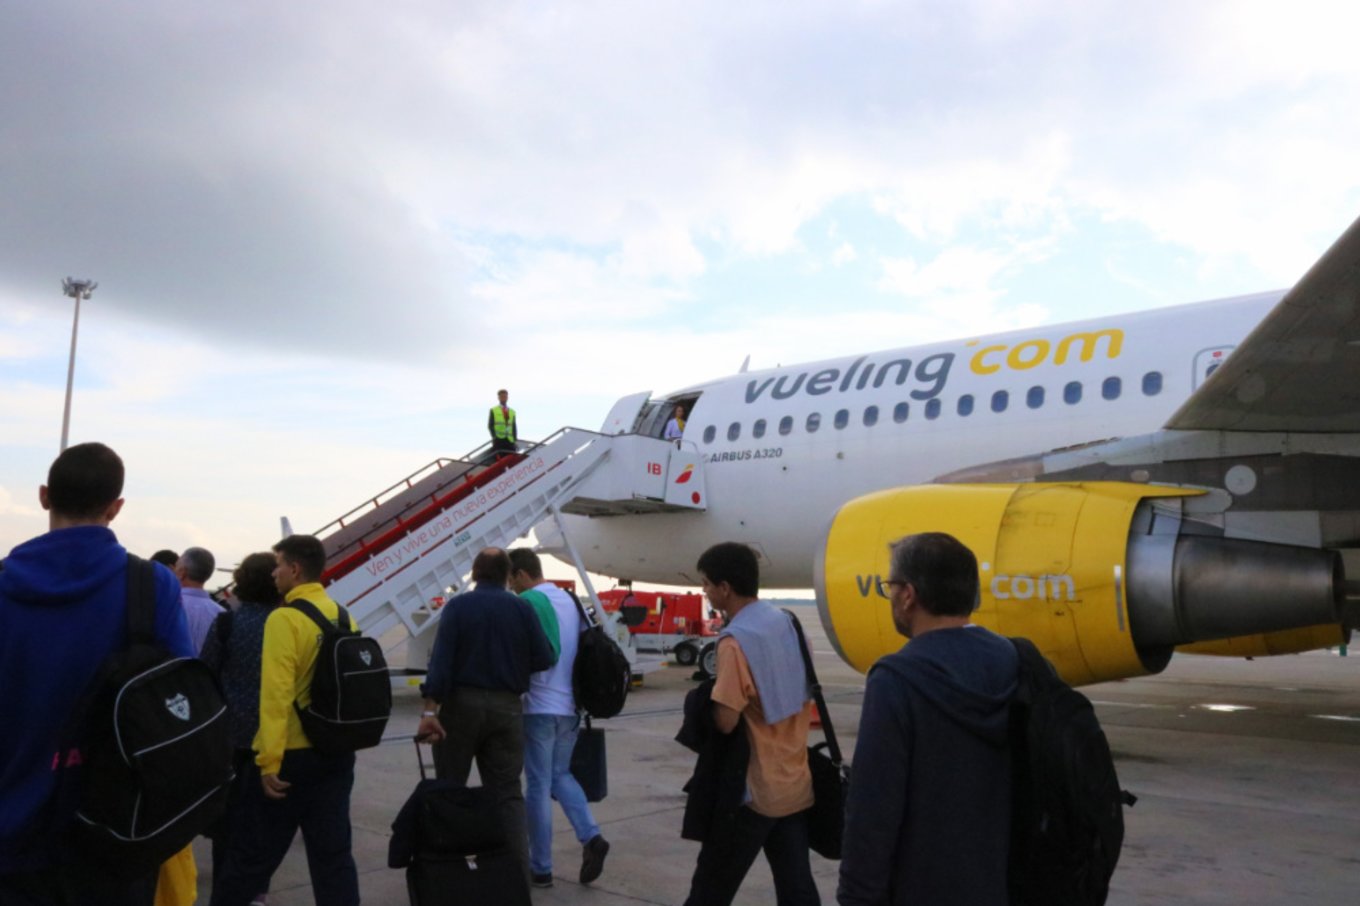 西班牙 vueling airline 伏林航空 登機 1 jpg 1